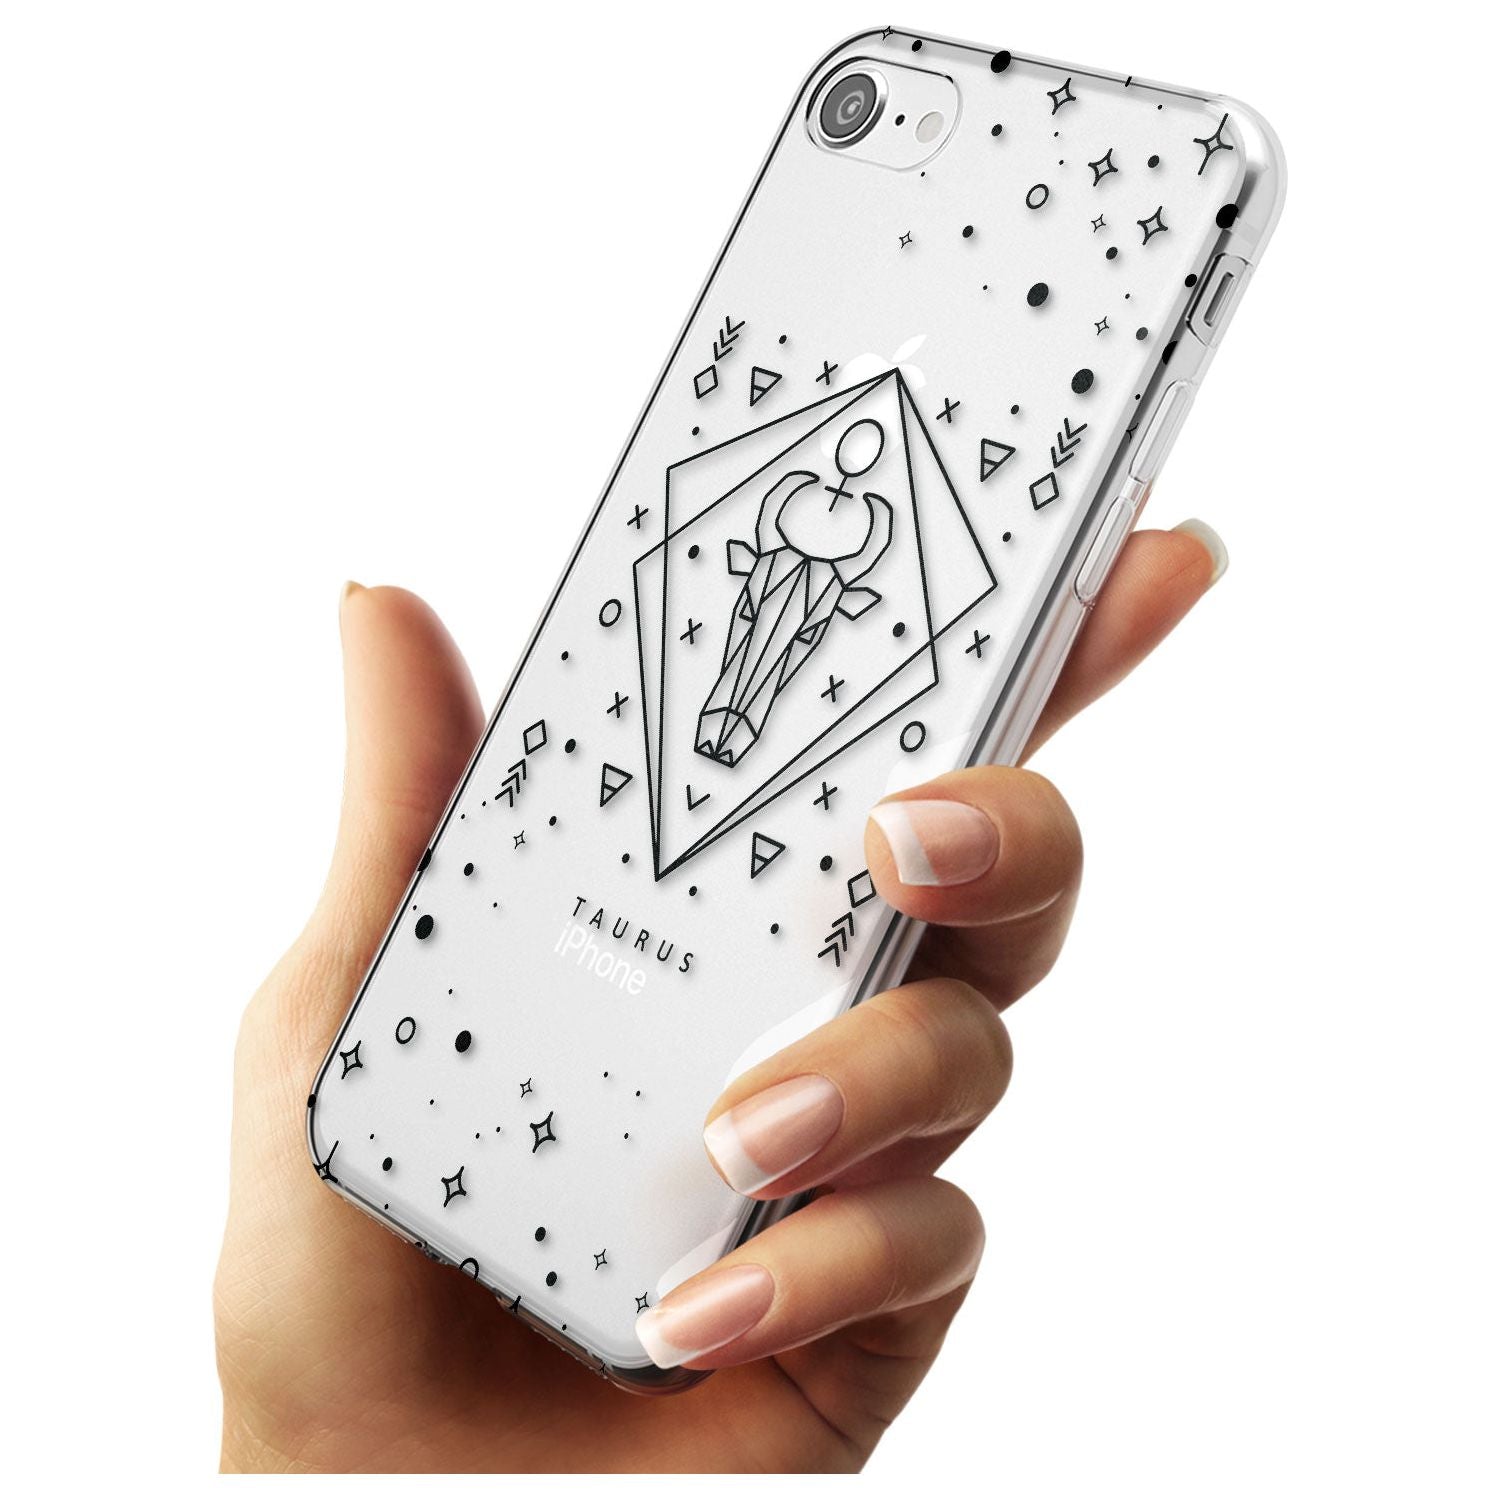 Taurus Emblem - Transparent Design Slim TPU Phone Case for iPhone SE 8 7 Plus